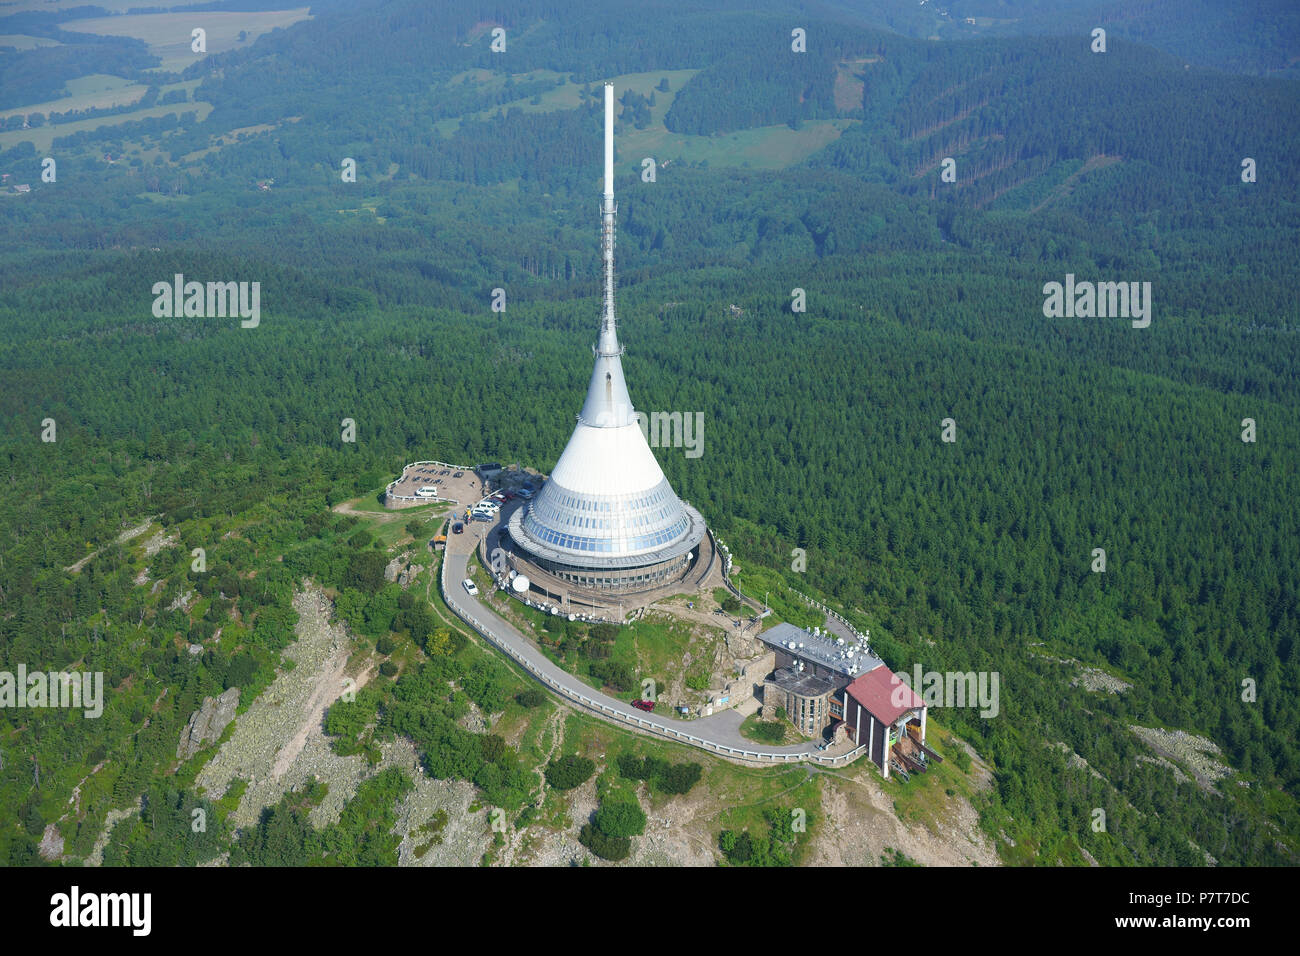 VUE AÉRIENNE. Structure hyperboloïde (hauteur : 94M) sur le mont Ještěd (altitude : 1012m) utilisée comme antenne TV et comme hôtel. Tour Ještěd, Liberec, Tchéquie. Banque D'Images